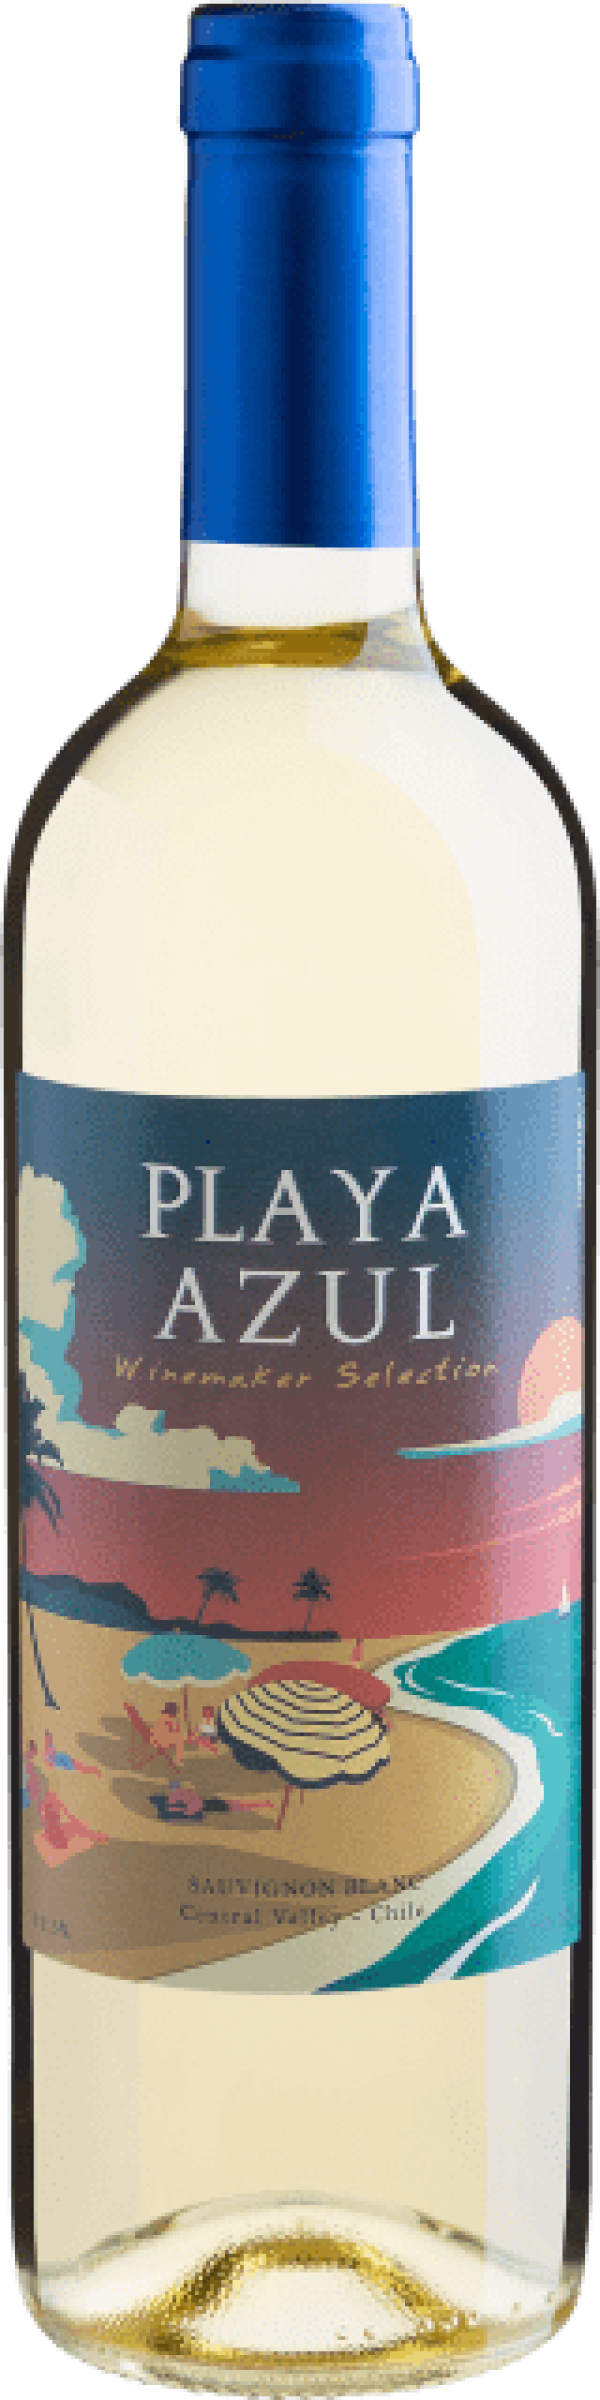 Playa Azul Winemaker Selection Sauvignon Blanc Central Valley D.O. 2021